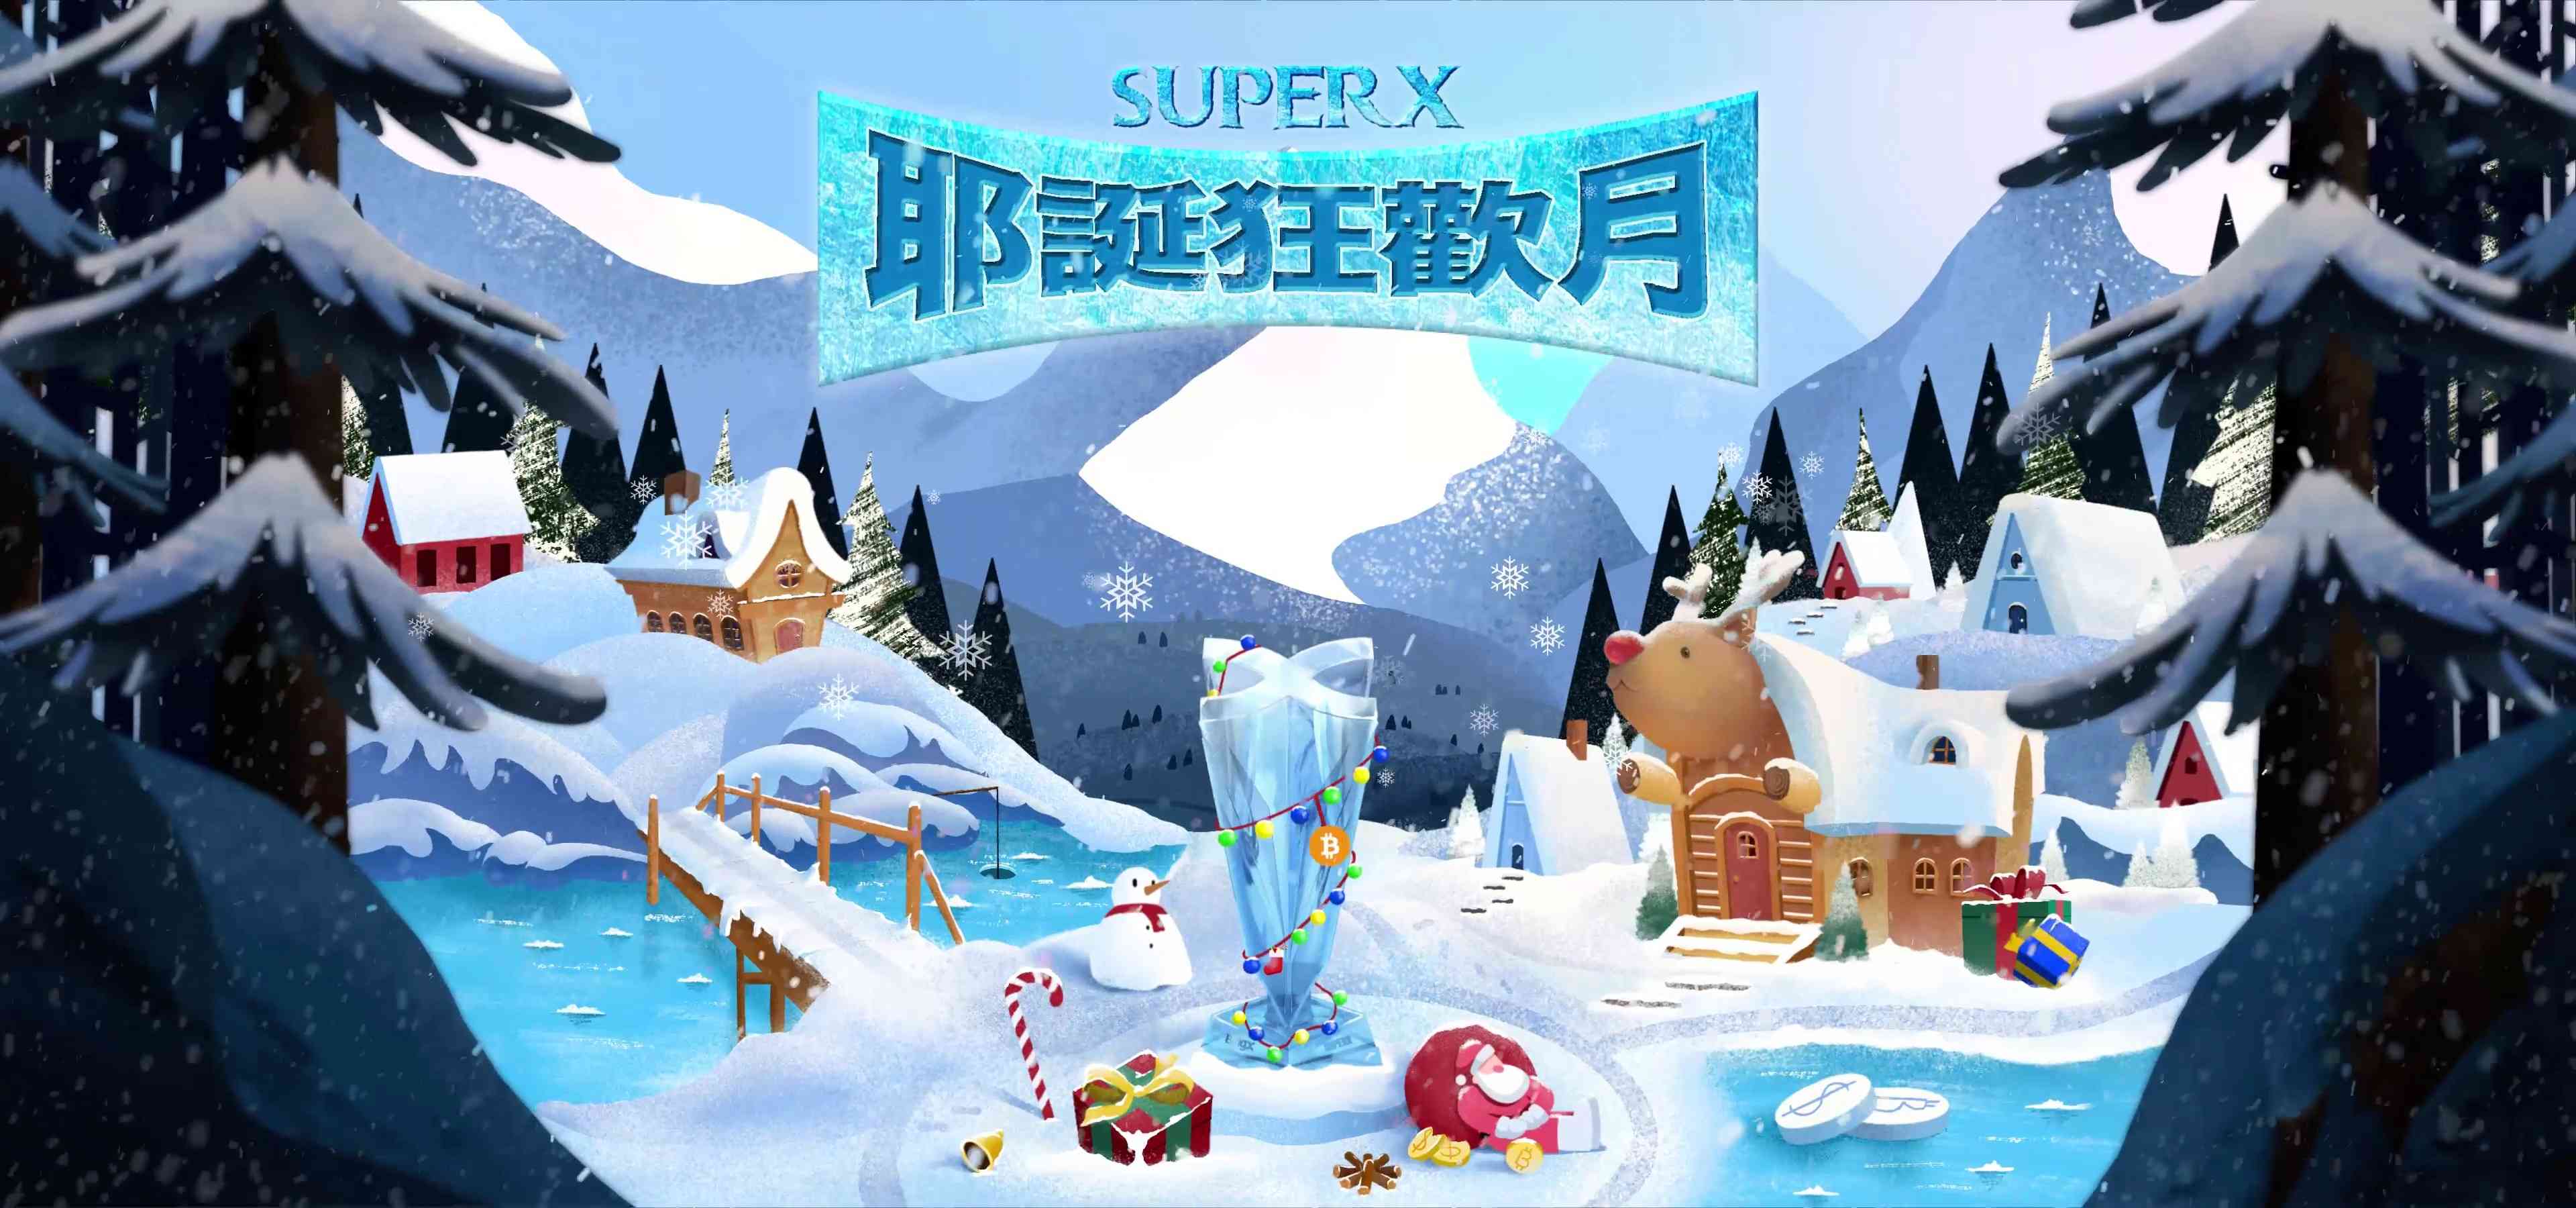 加密貨幣交易所BingX宣布 SuperX 交易大賽推出專屬耶誕節獎勵 - 早安台灣新聞 | Morning Taiwan News